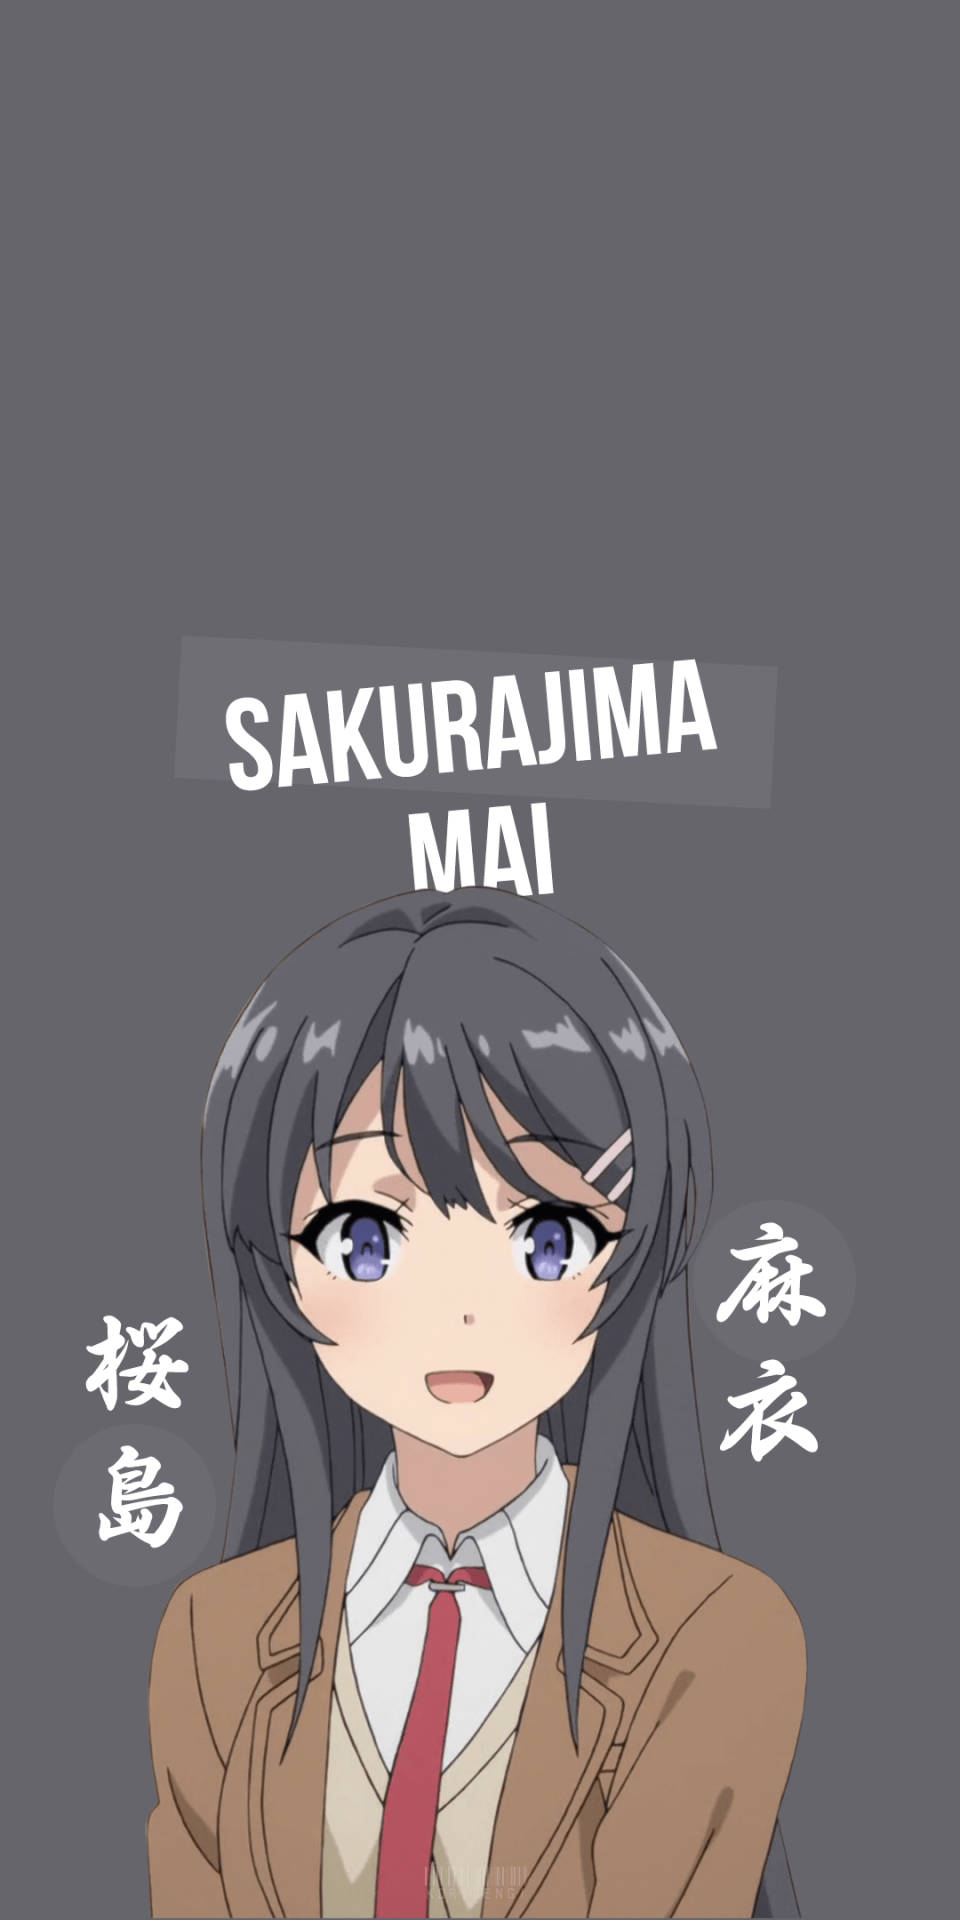 Smuk Mai Sakurajima i uniform Wallpaper